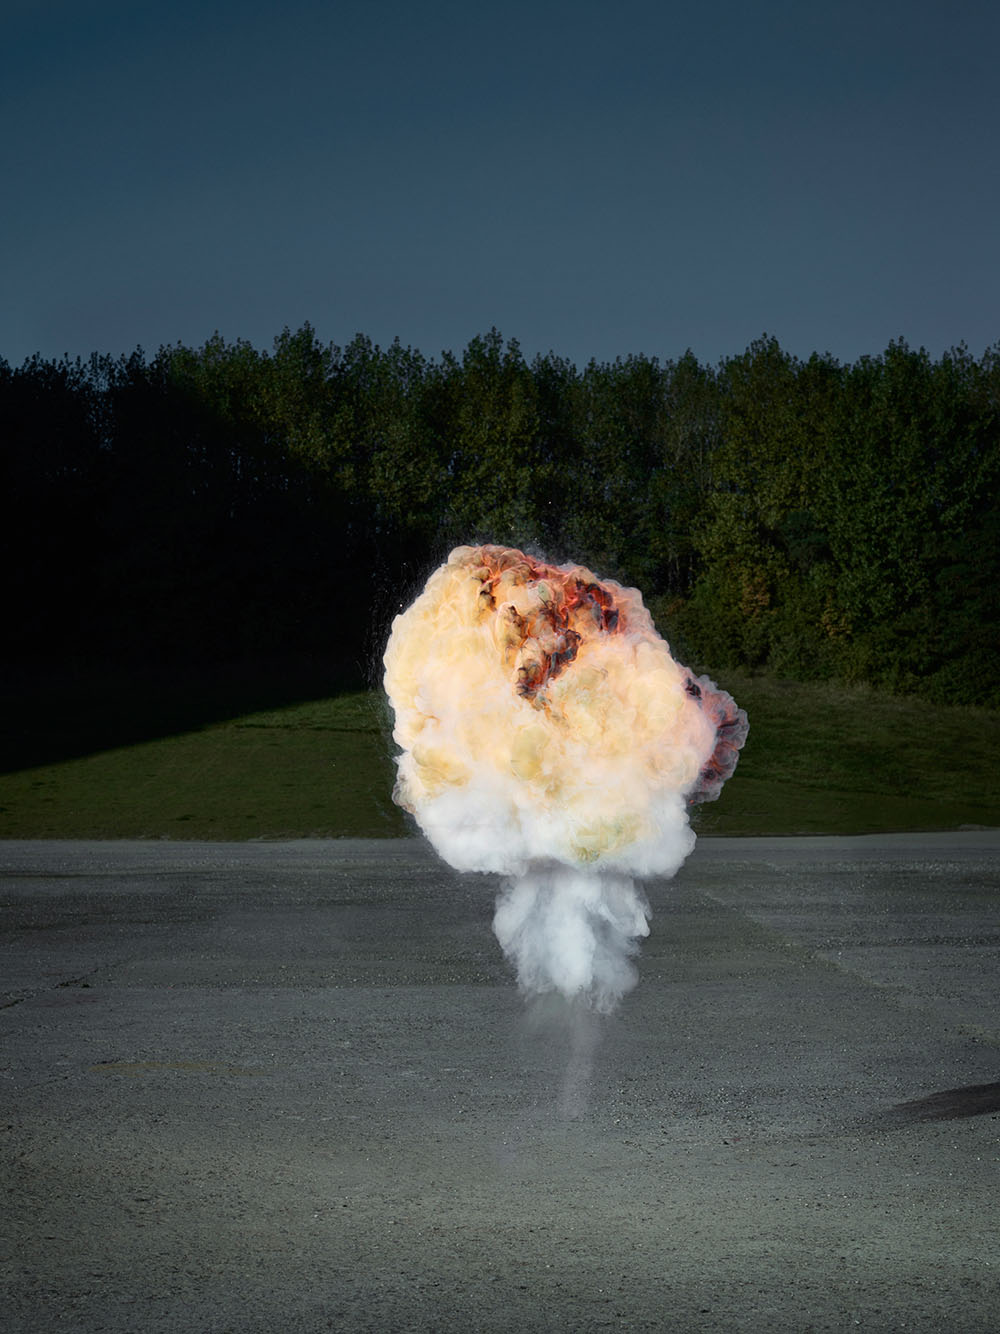 Explosion2.0: облачные взрывы в фотографиях от Кена Херманна